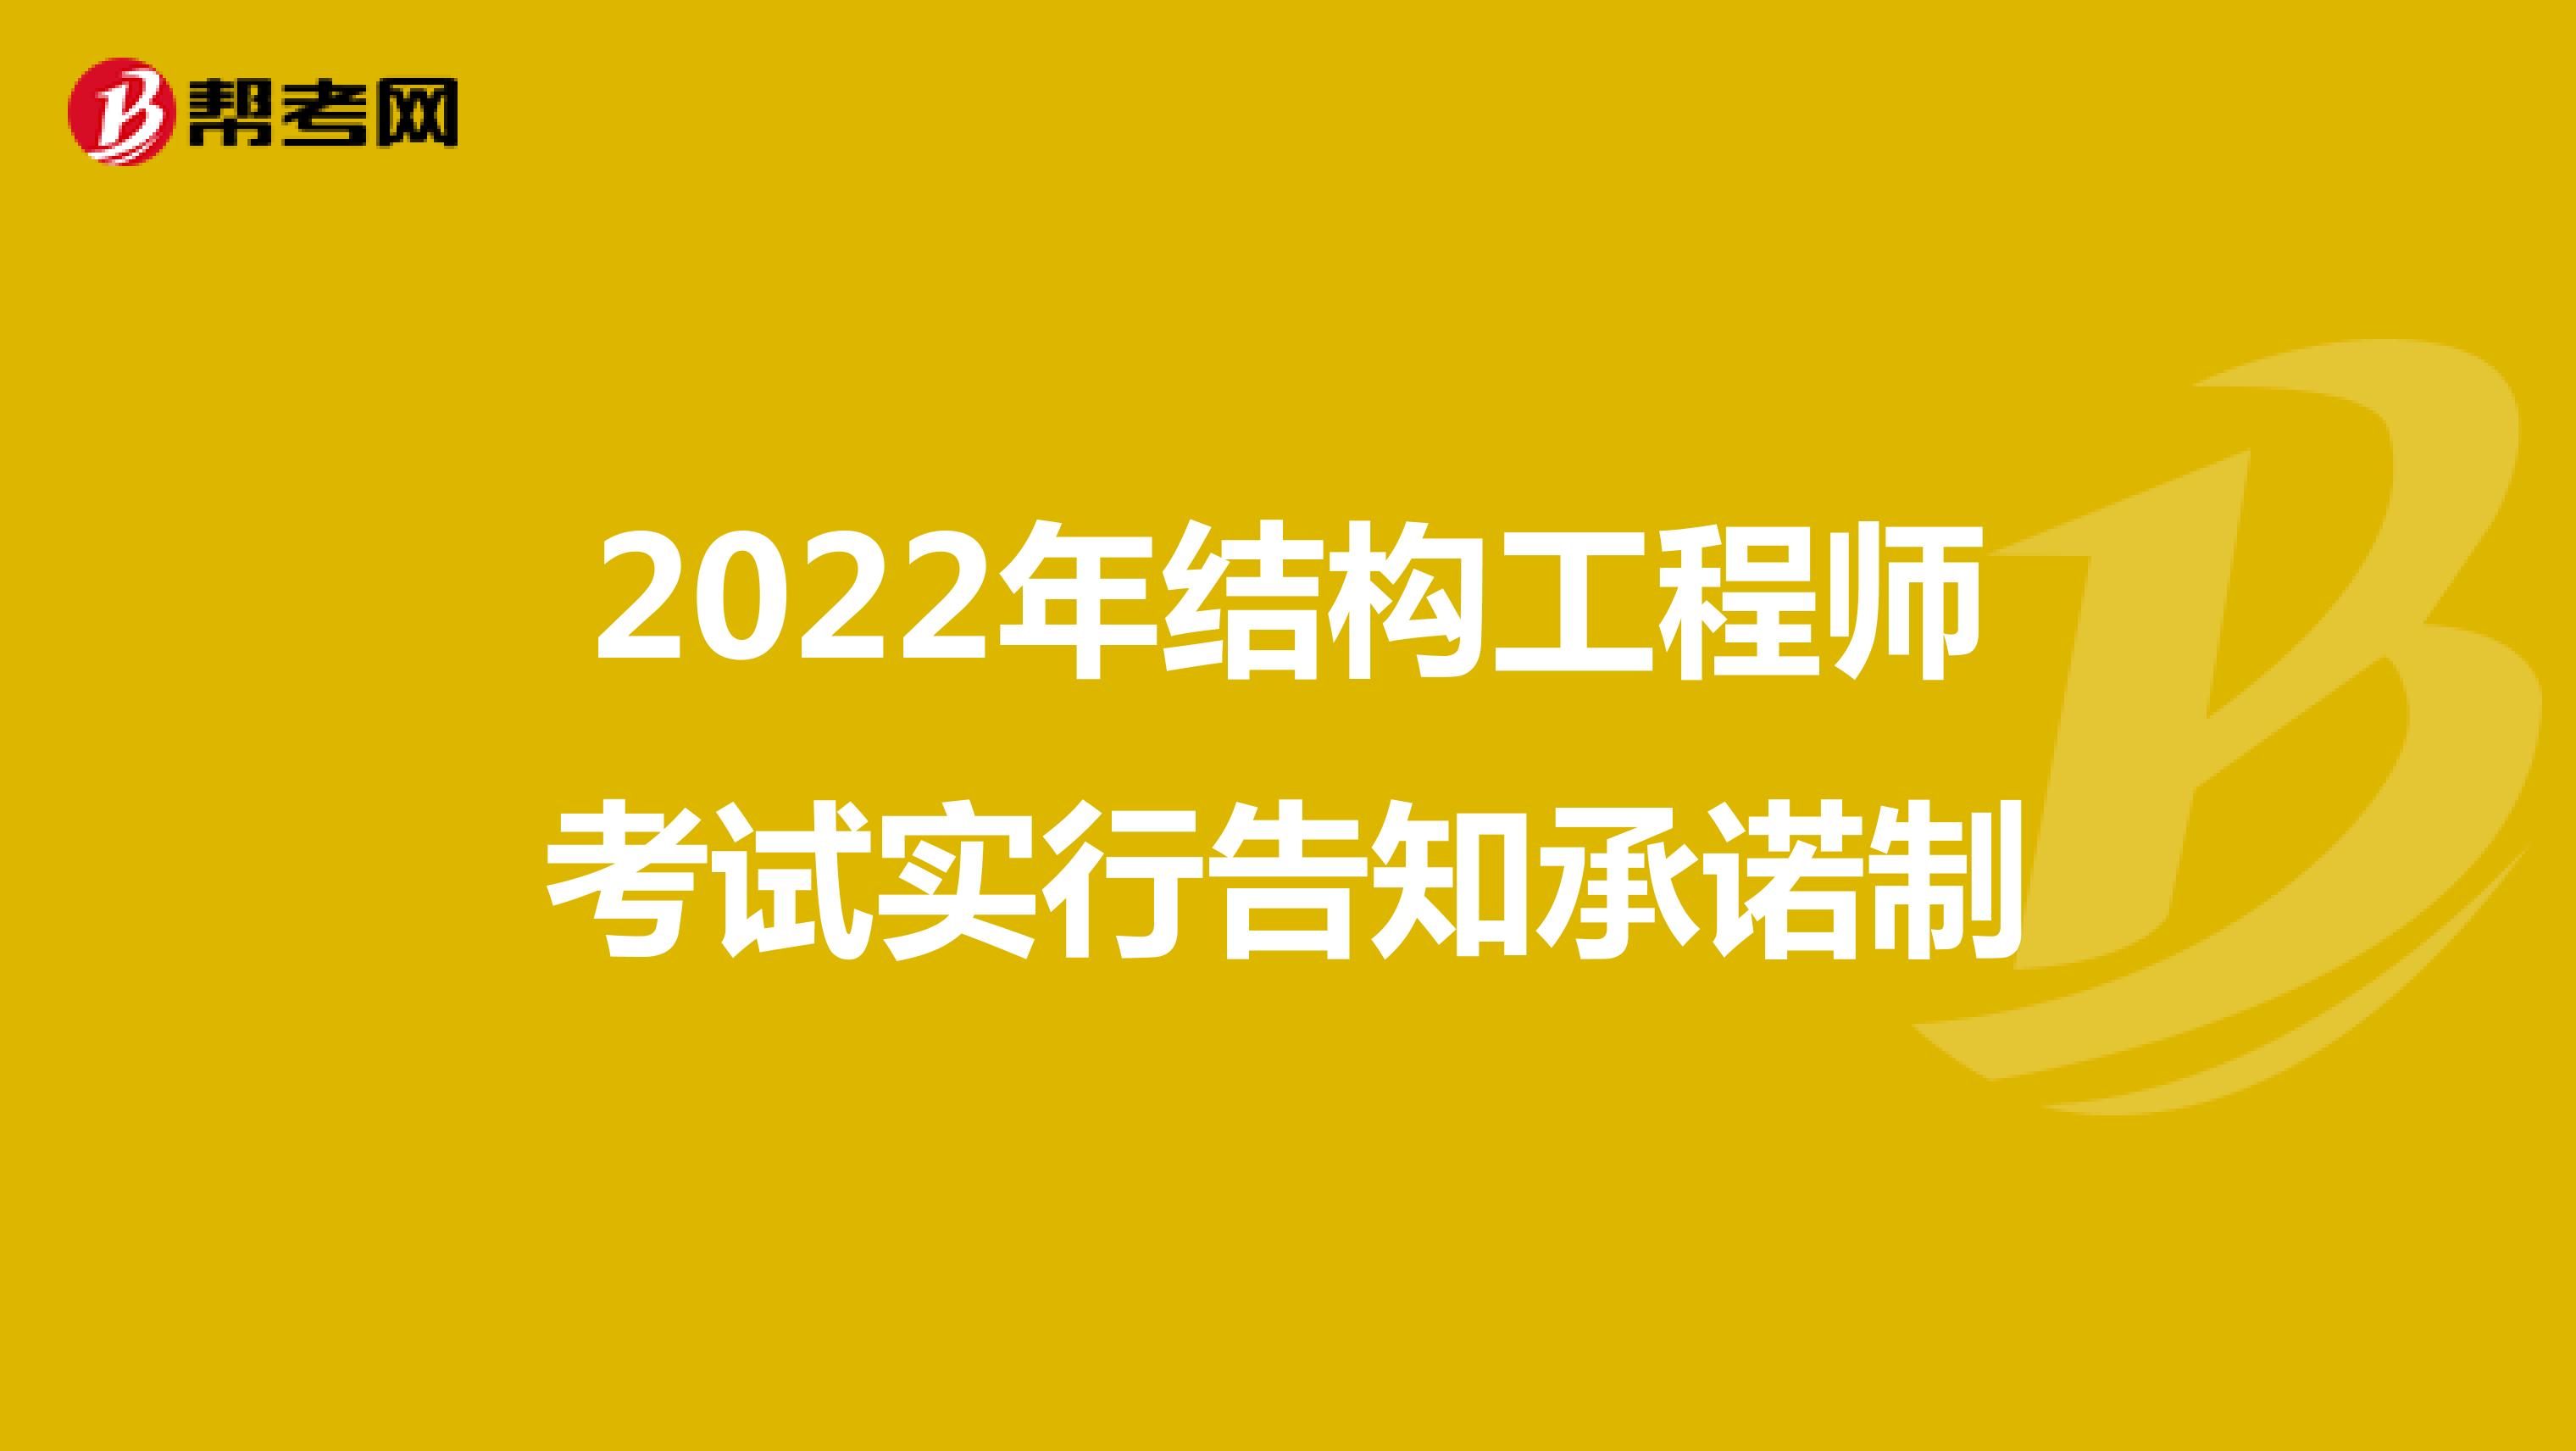 2022年结构工程师考试实行告知承诺制